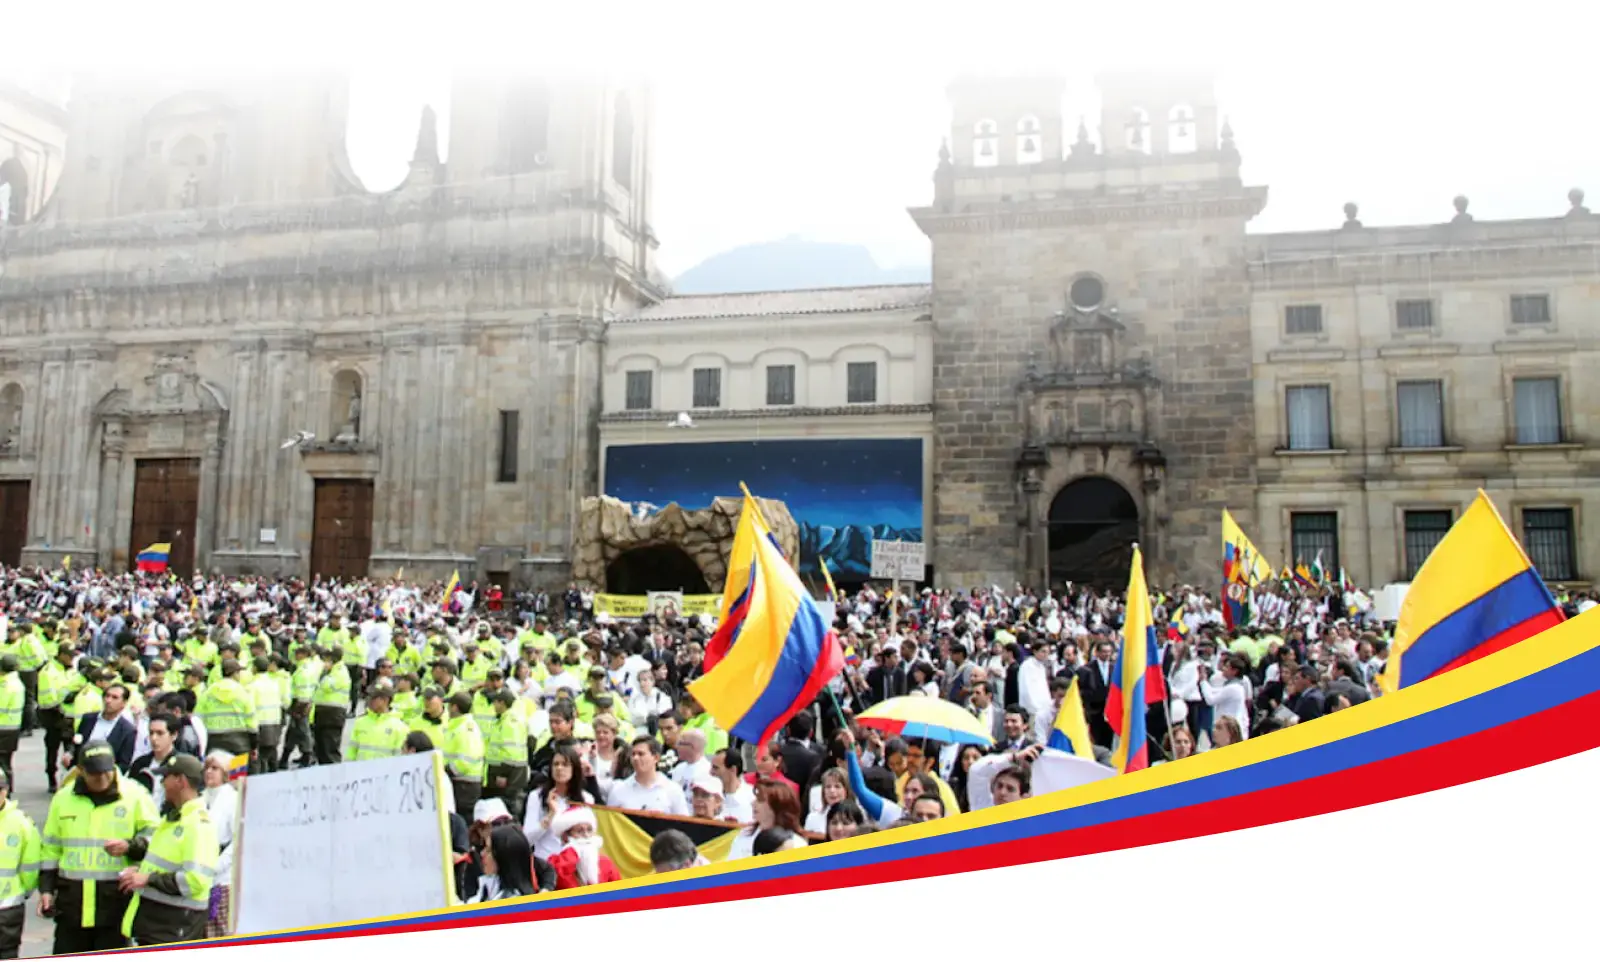 哥伦比亚有大量人聚集在一起，其中许多人举着哥伦比亚国旗，在一座著名的联邦大楼前，可能是大教堂或政府建筑，前景是执法人员。